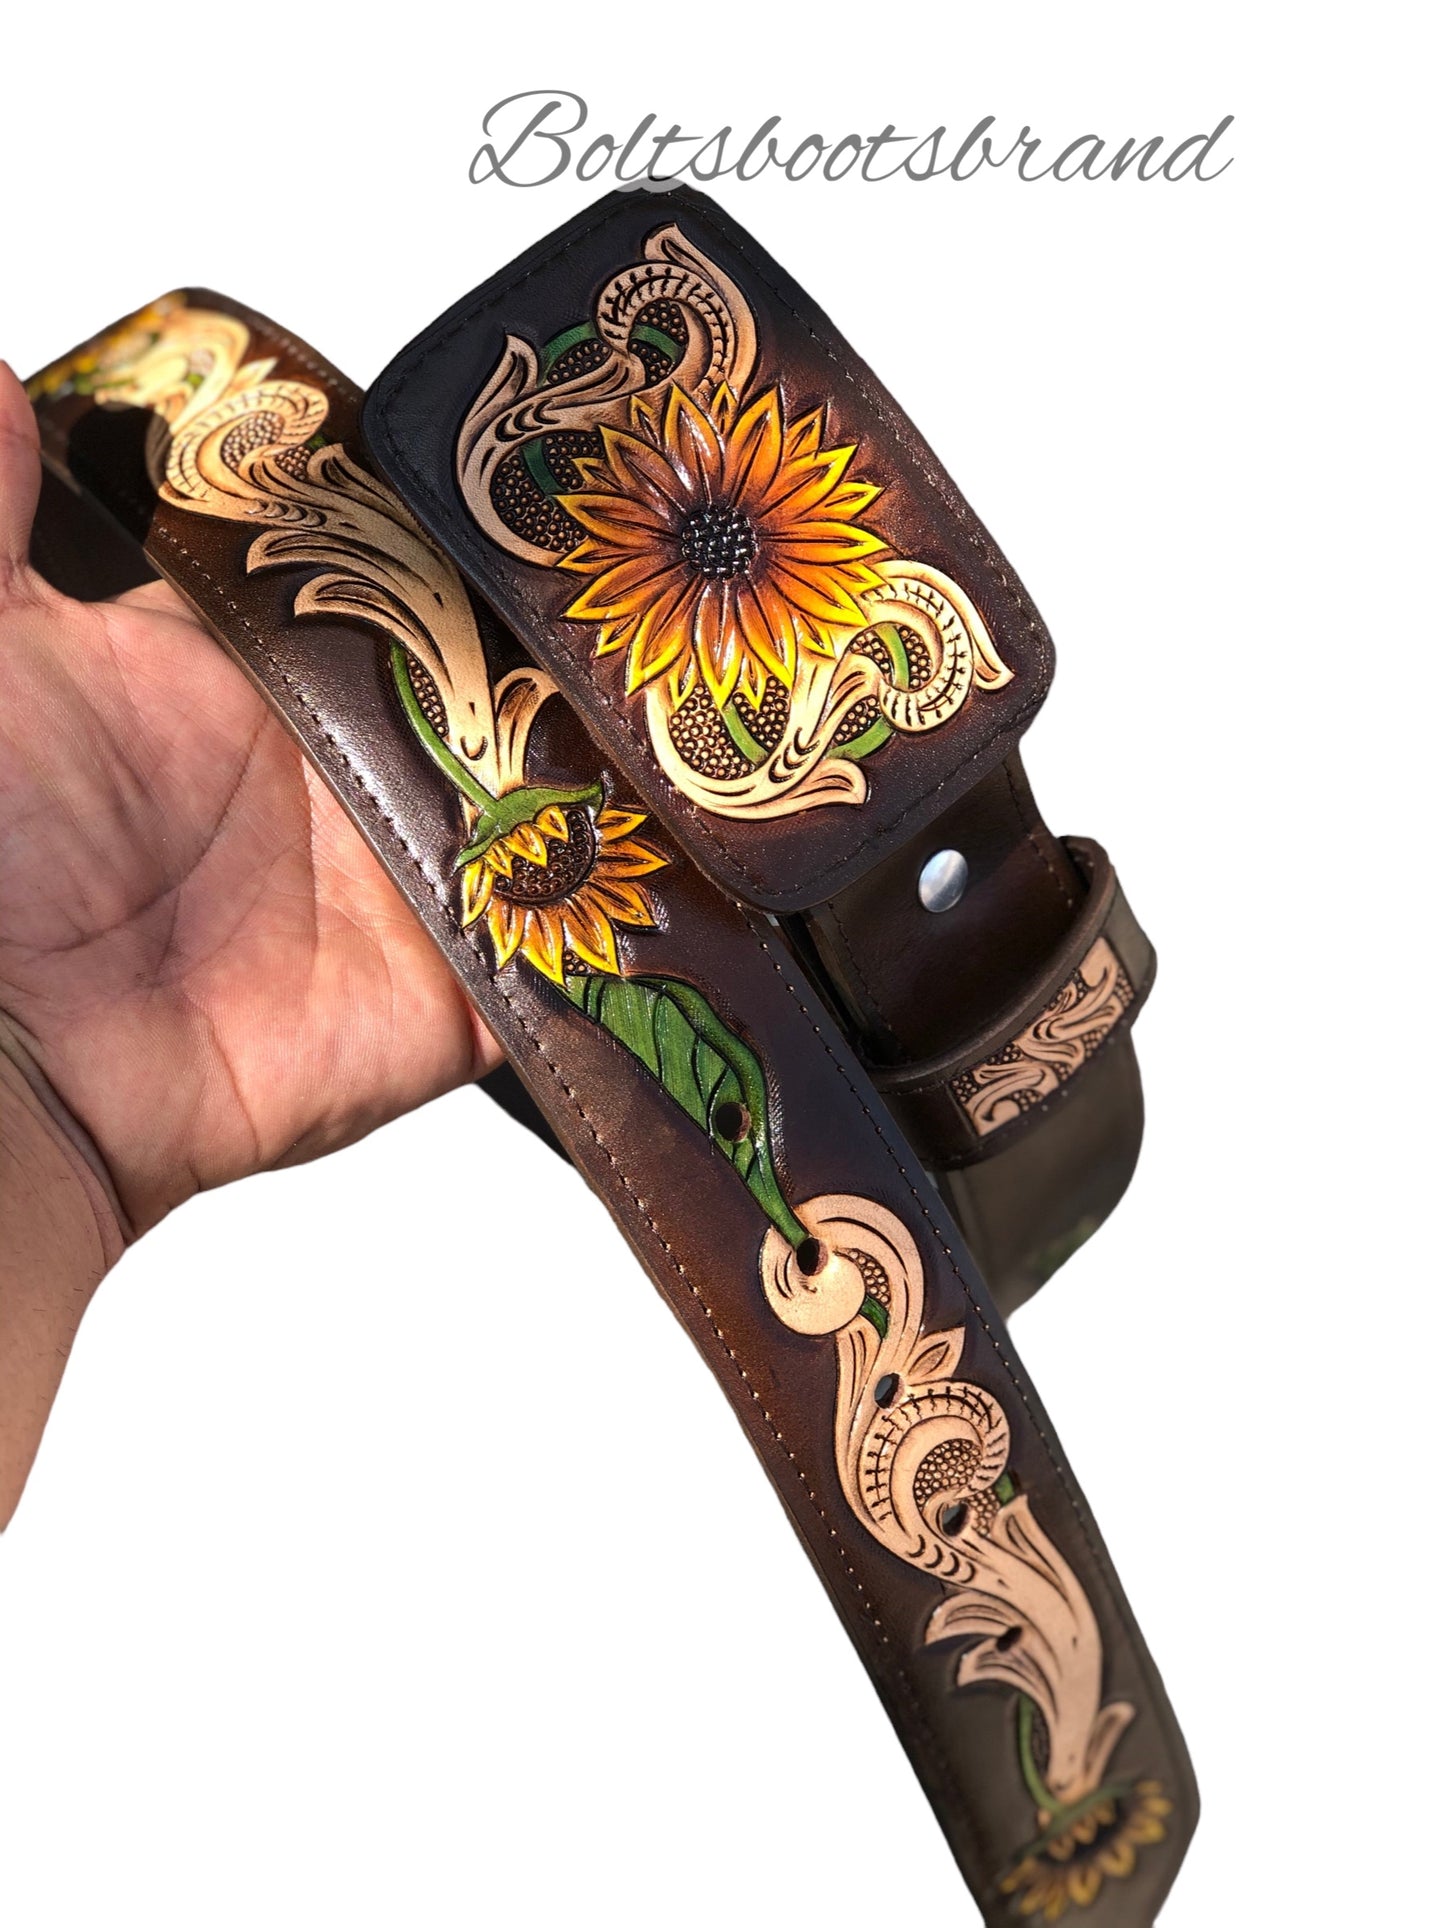 The original sunflower belt 🌻